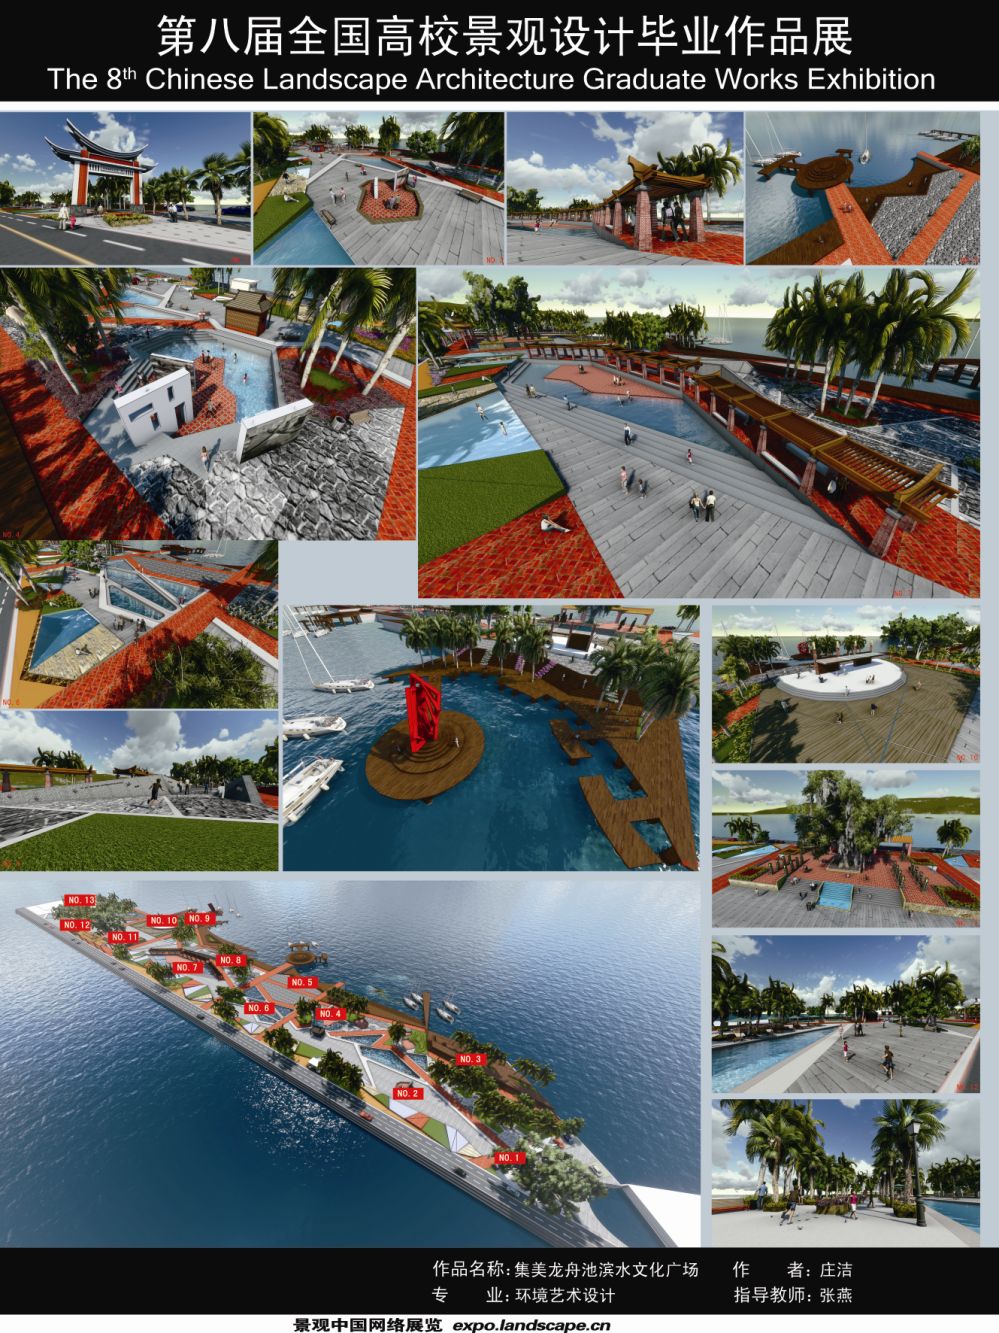 集美区龙舟池滨水文化广场景观设计-2